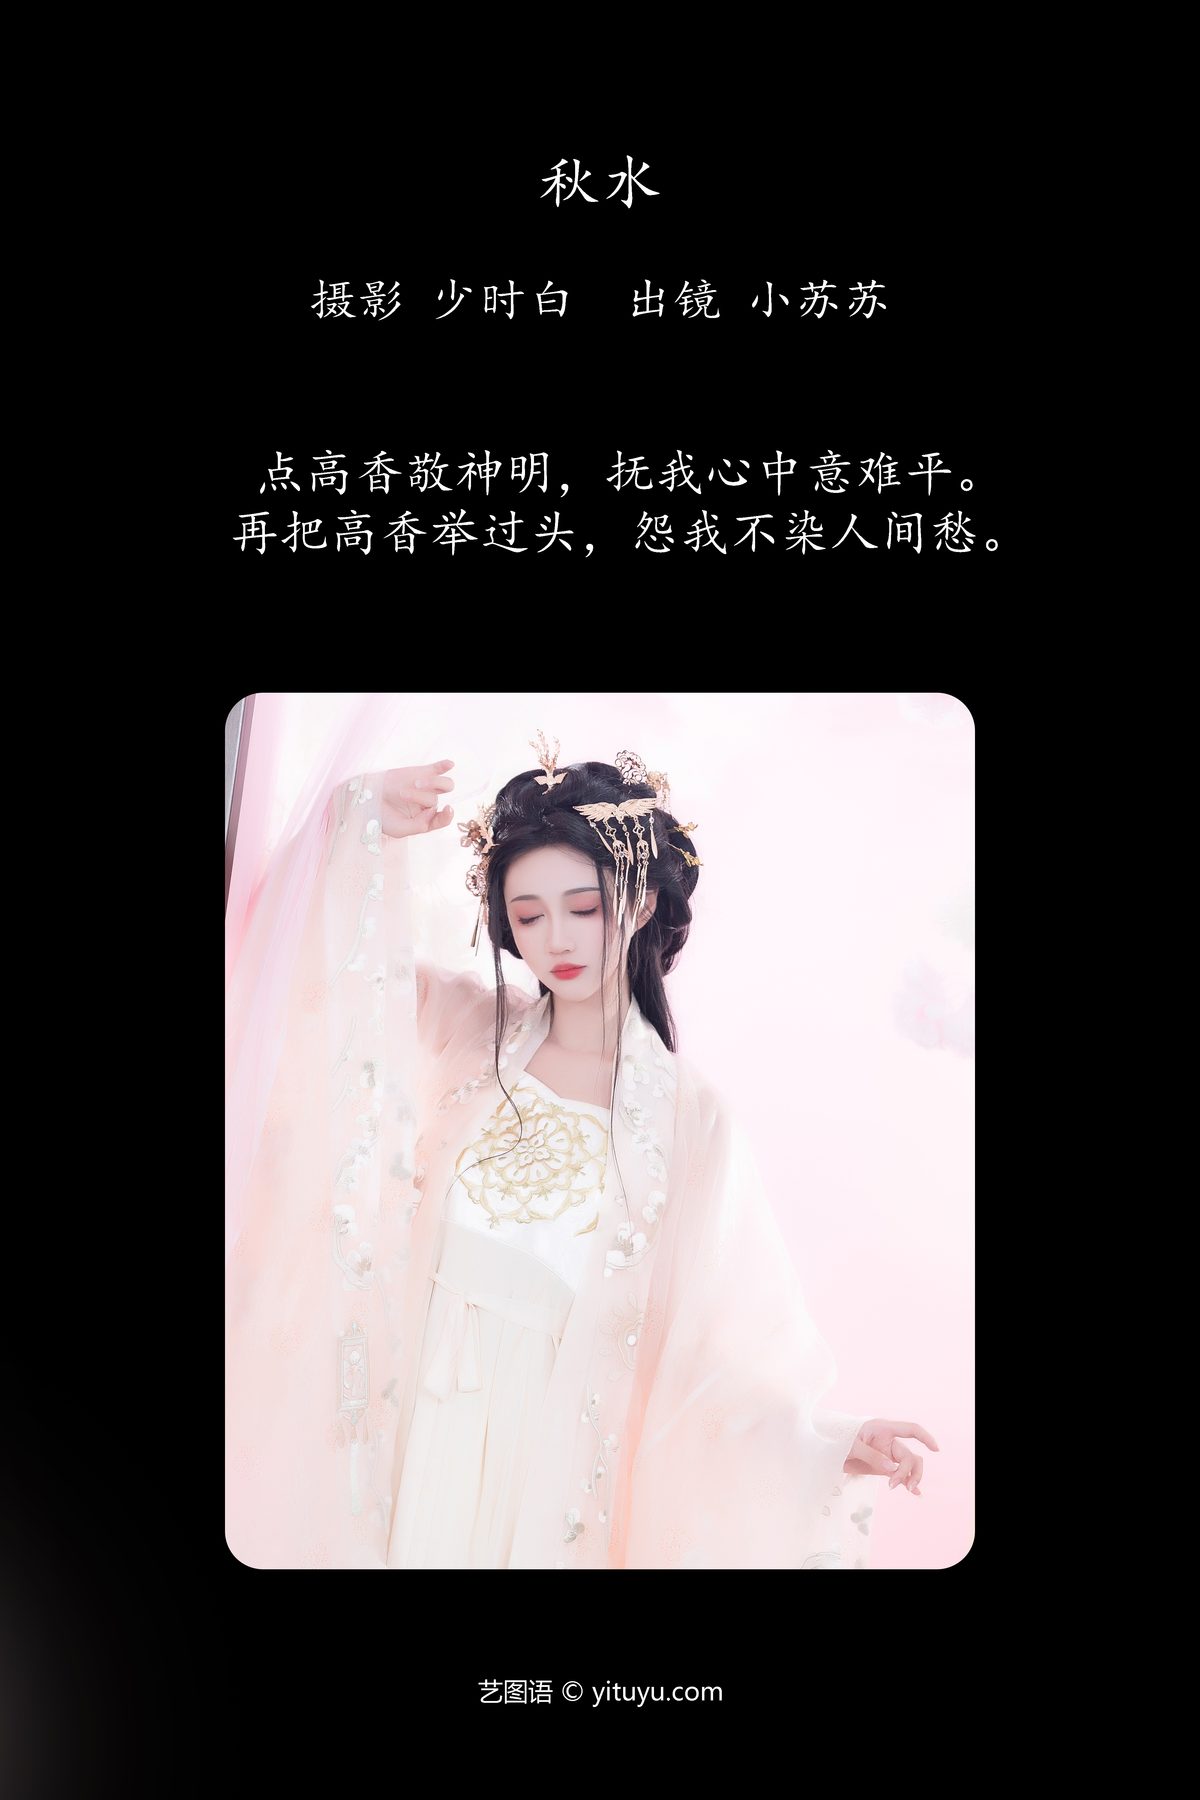 YiTuYu艺图语 Vol 5561 Qi Luo Sheng De Xiao Su Su 0002 4742219822.jpg